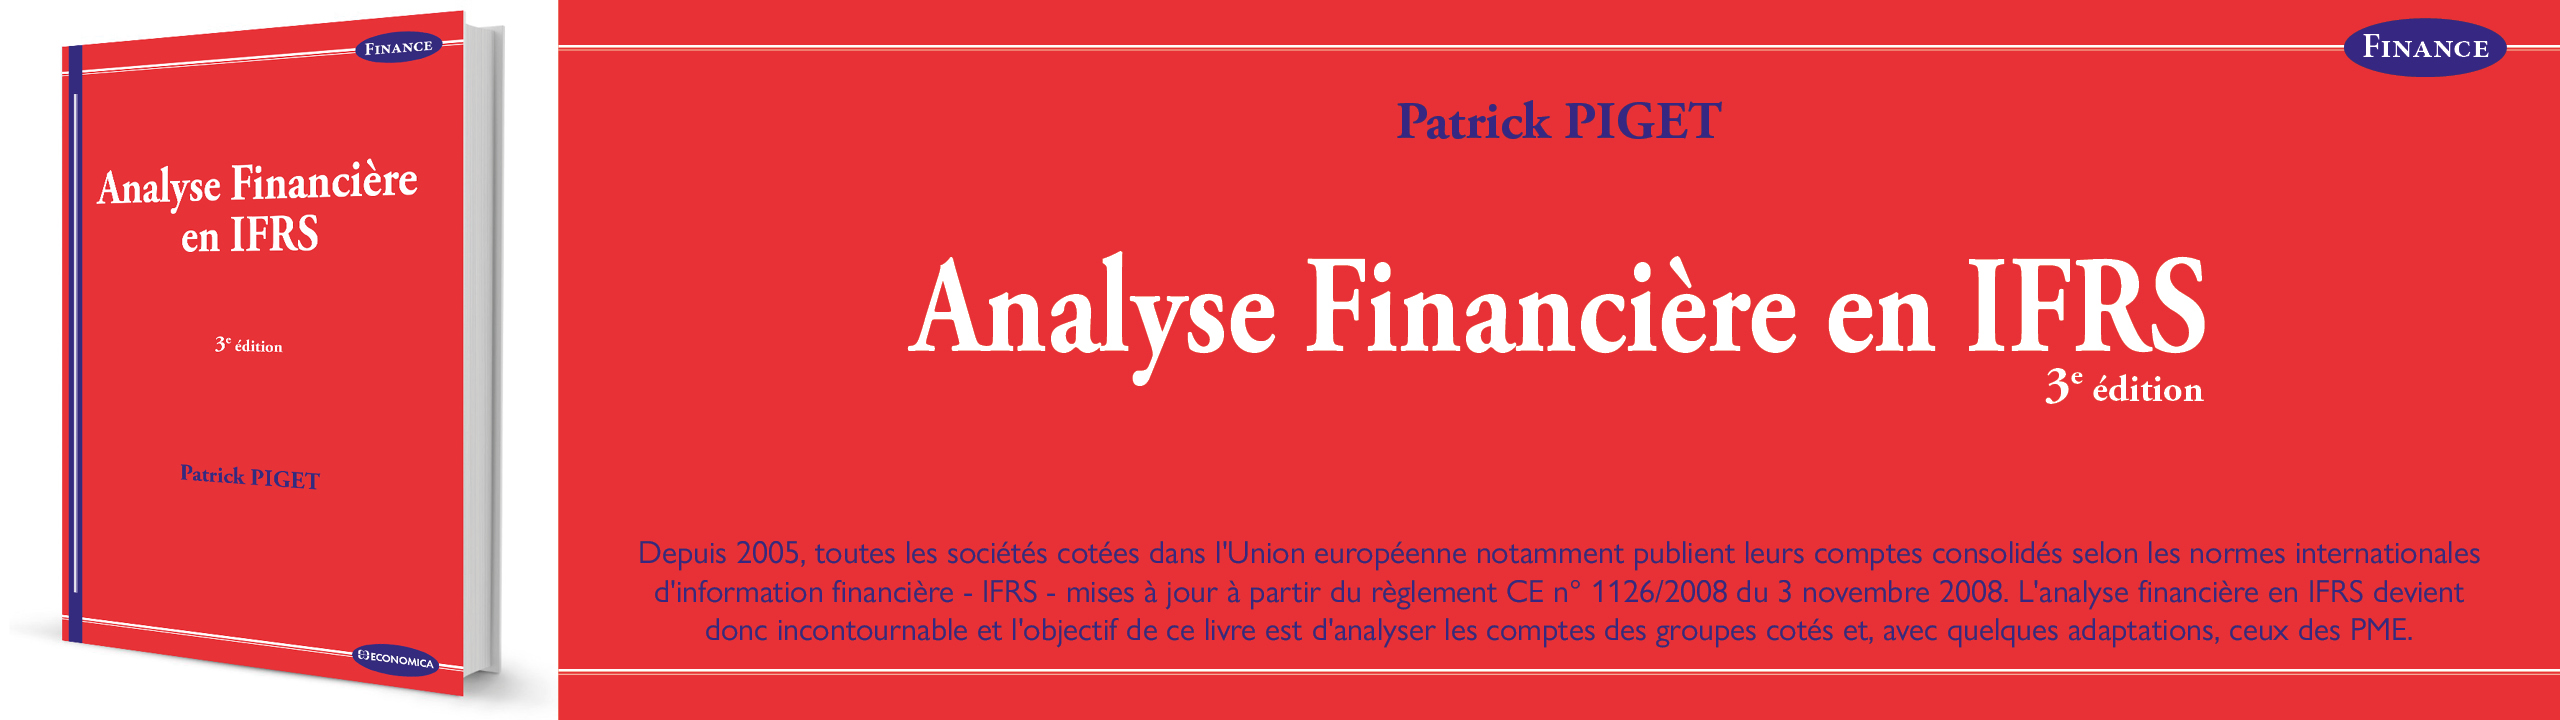 Analyse financière en IFRS, 3e édition - Patrick Piget - 9782717872644